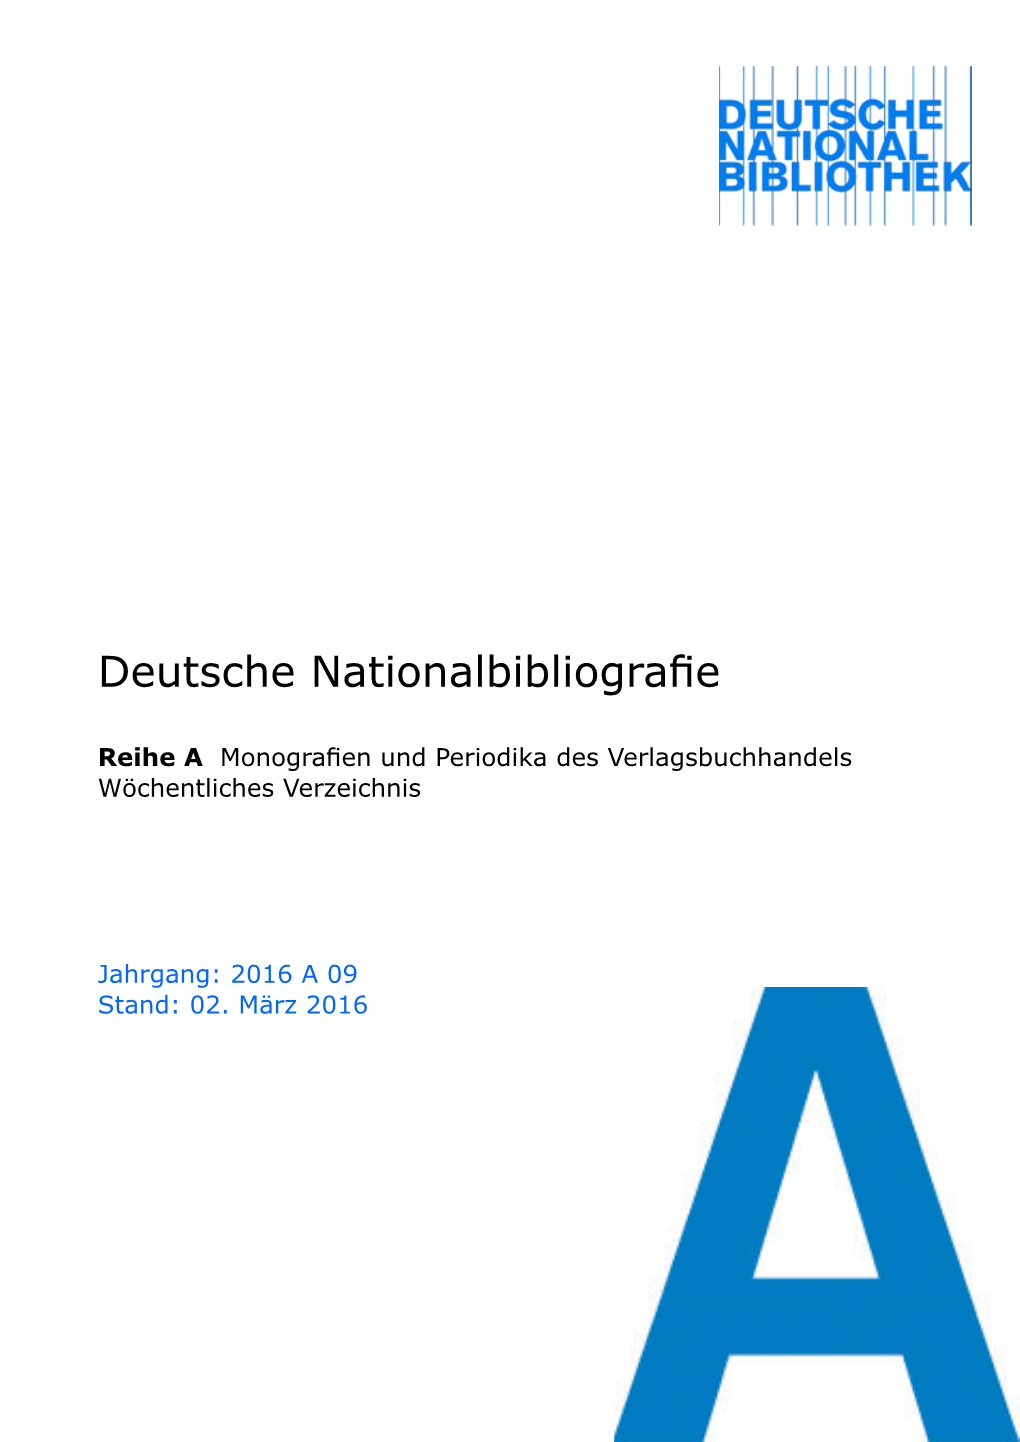 Deutsche Nationalbibliografie 2016 a 09